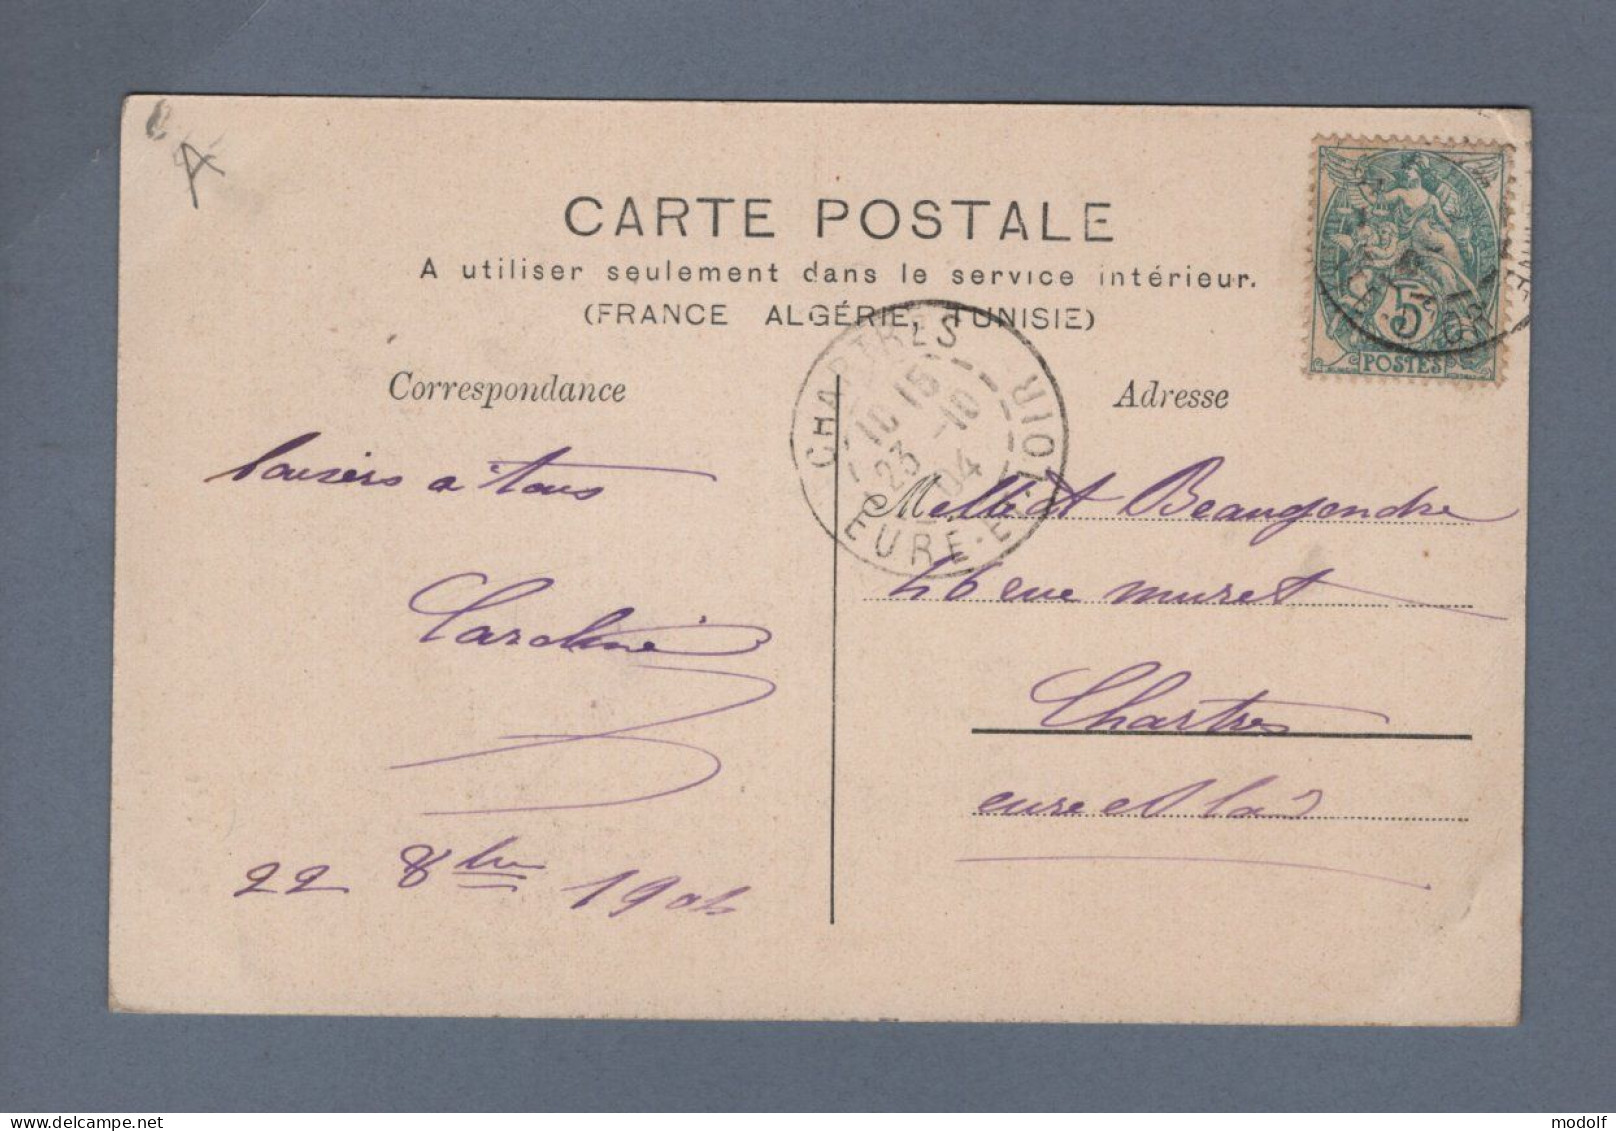 CPA - 21 - Beaune - Portail De L'Hôtel-Dieu - Circulée En 1904 - Beaune